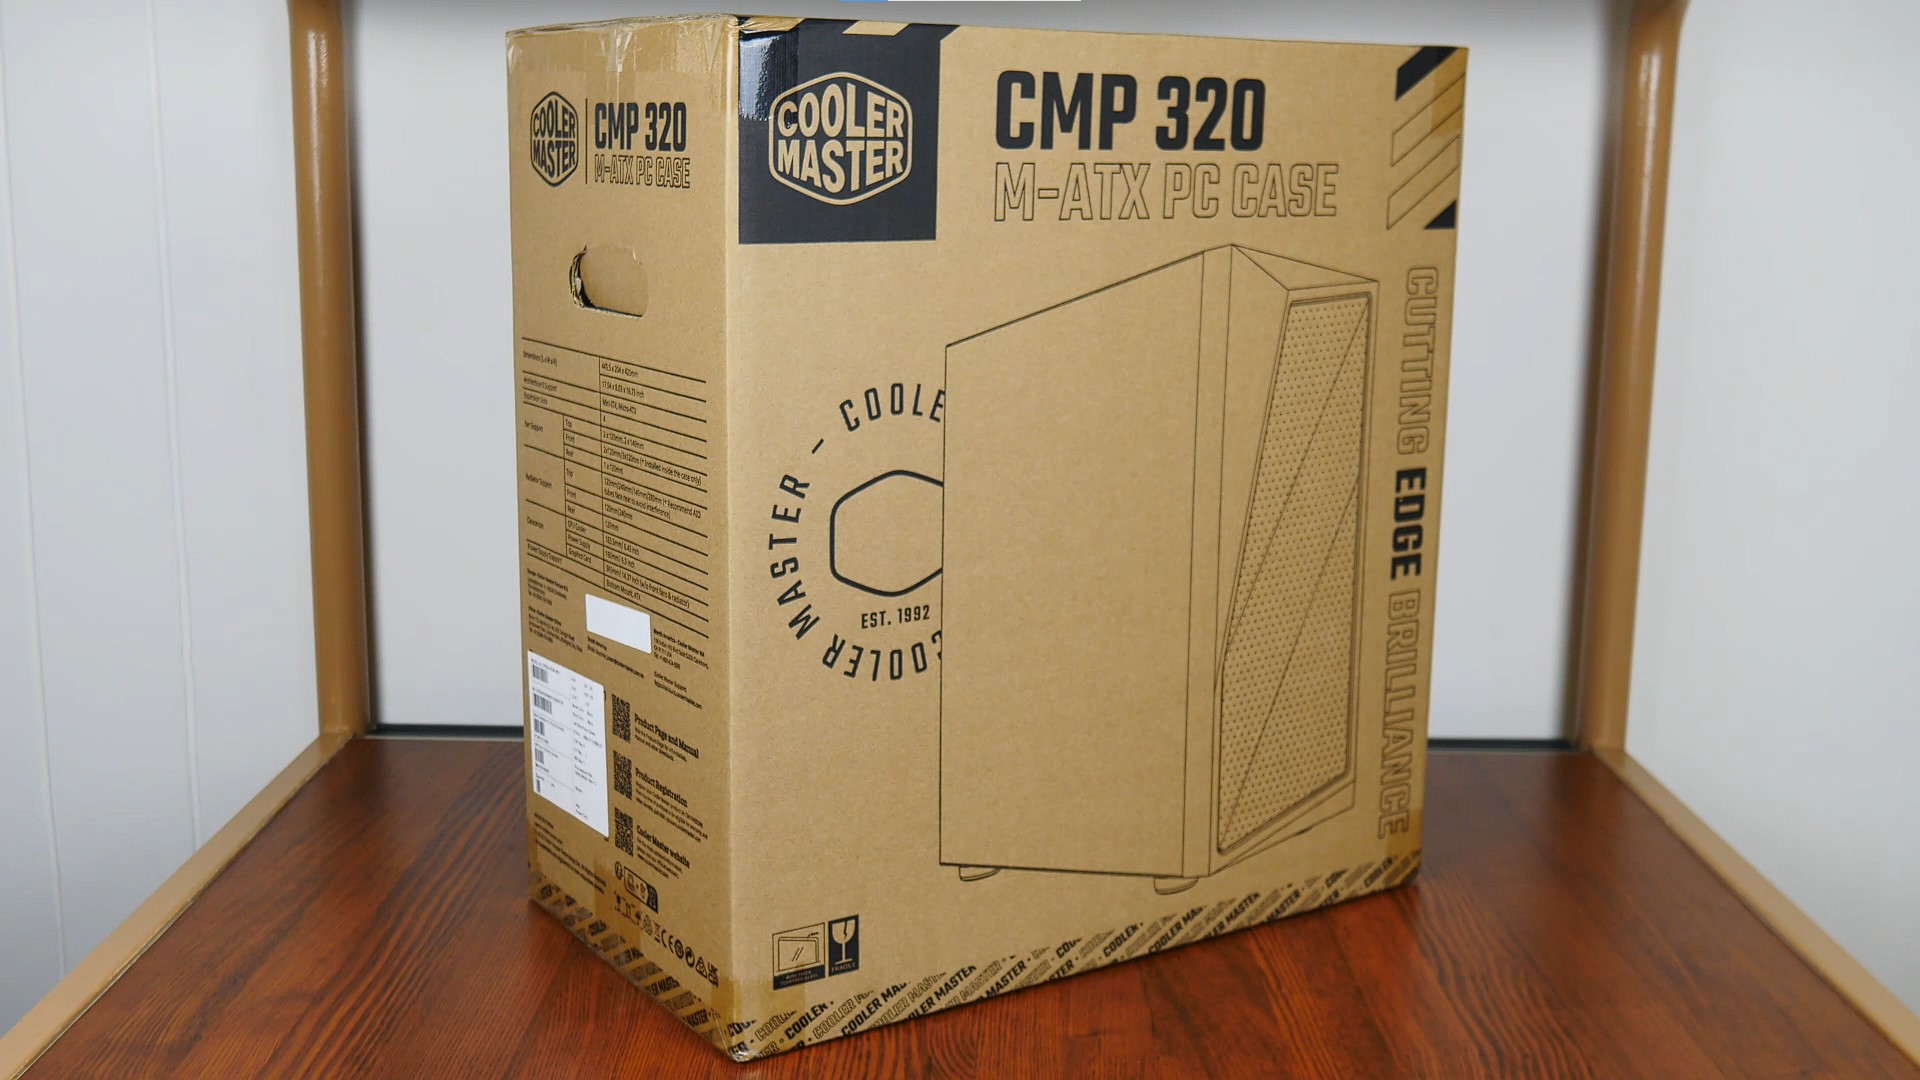 Cooler Master CMP 320 Packaging (Front)